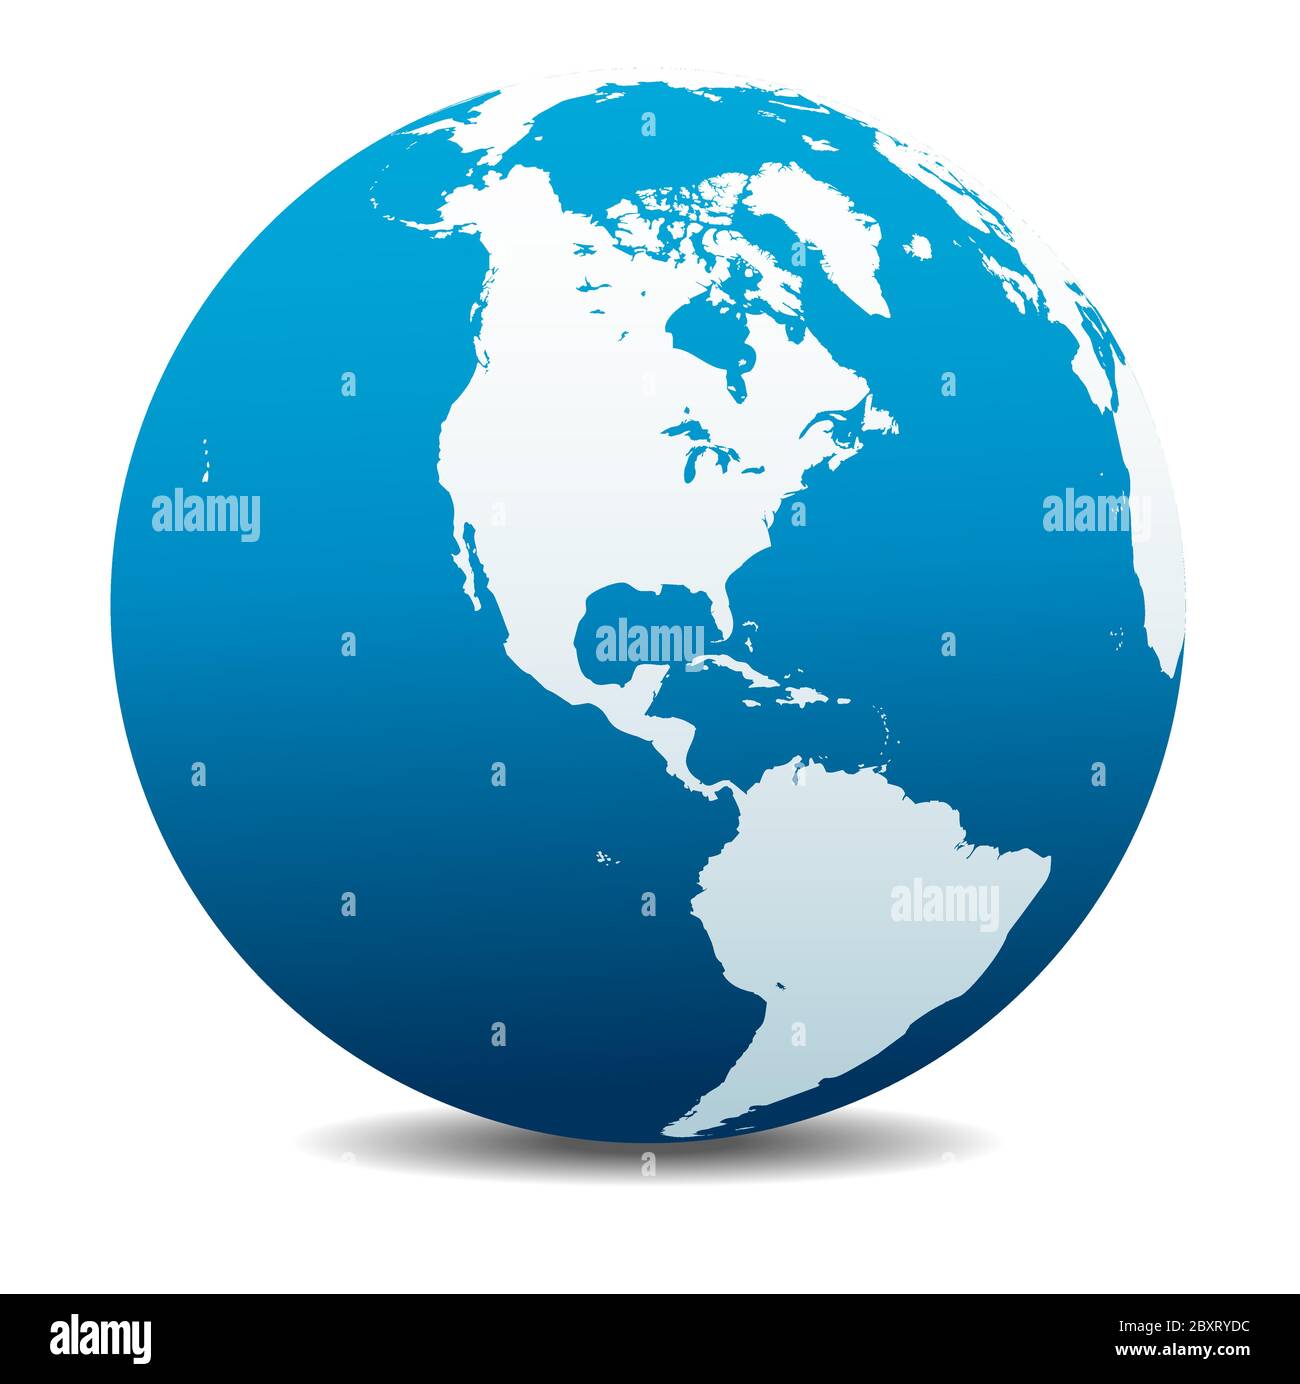 Amérique du Nord et du Sud. Icône carte vectorielle du globe terrestre, Terre. Tous les éléments se trouvent sur des calques individuels dans le fichier vectoriel. Illustration de Vecteur